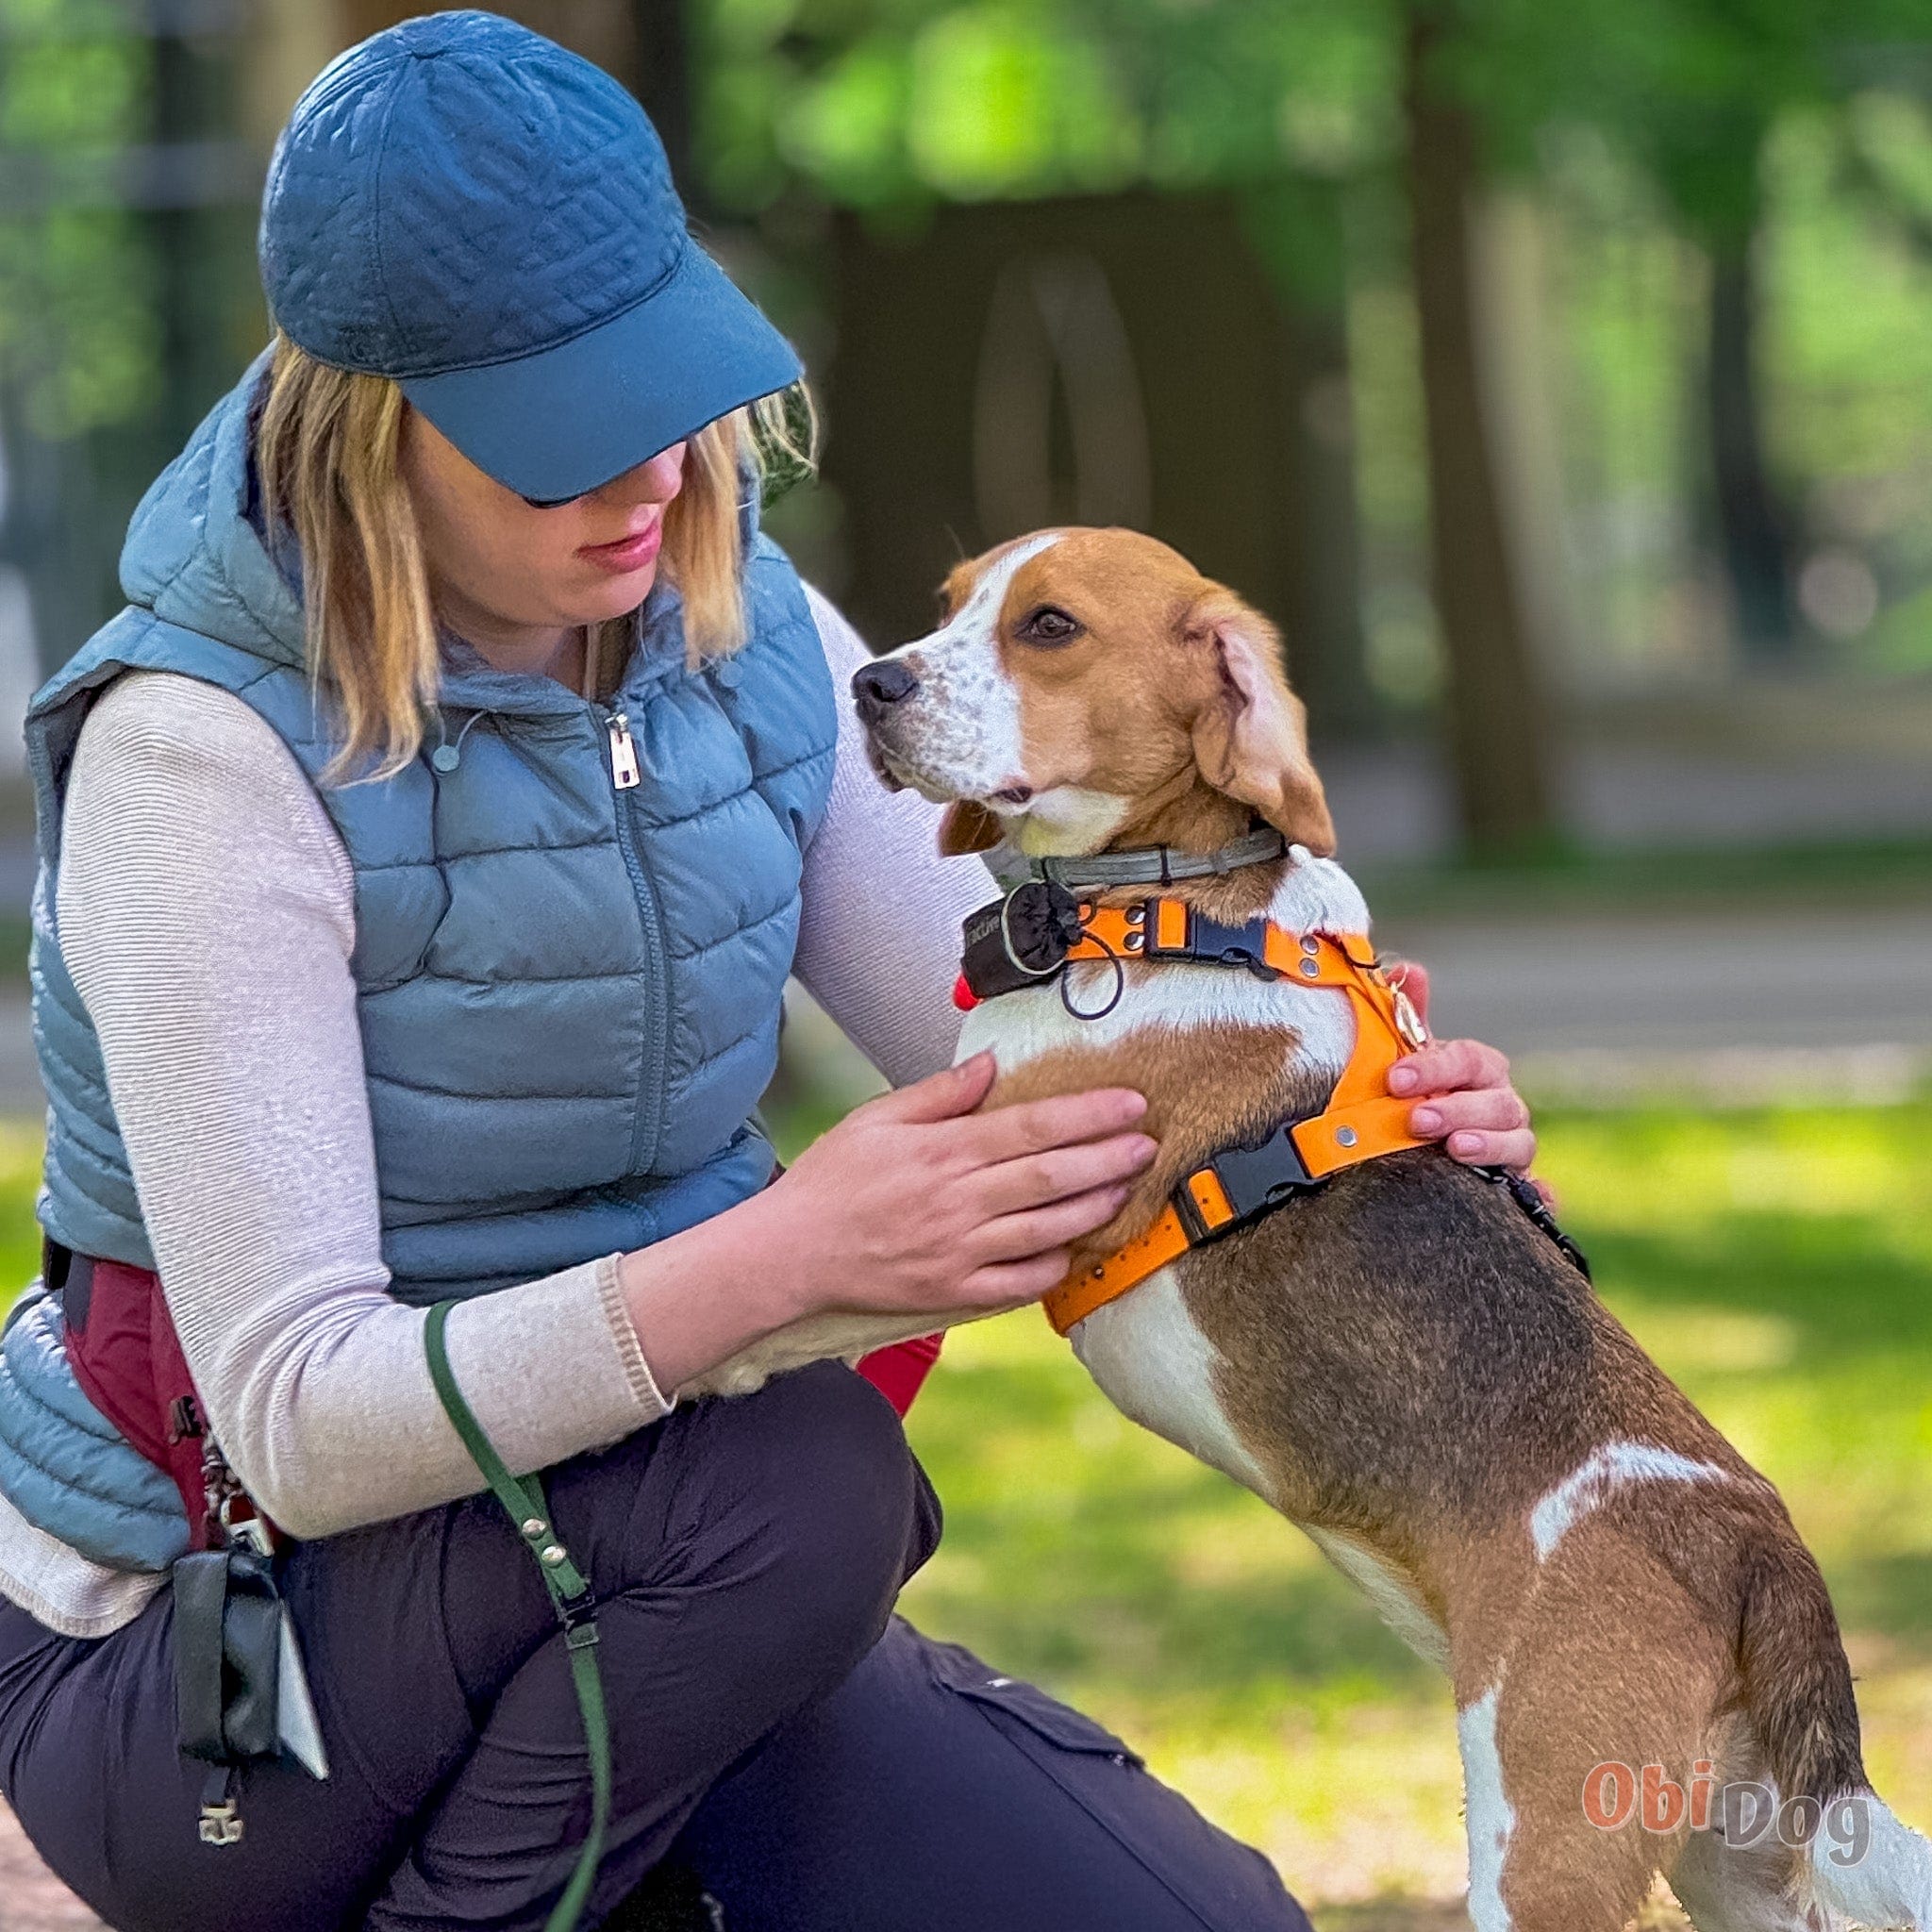 Trail Trekker: Biothane anatomiski pareizi iemaukti suņiem